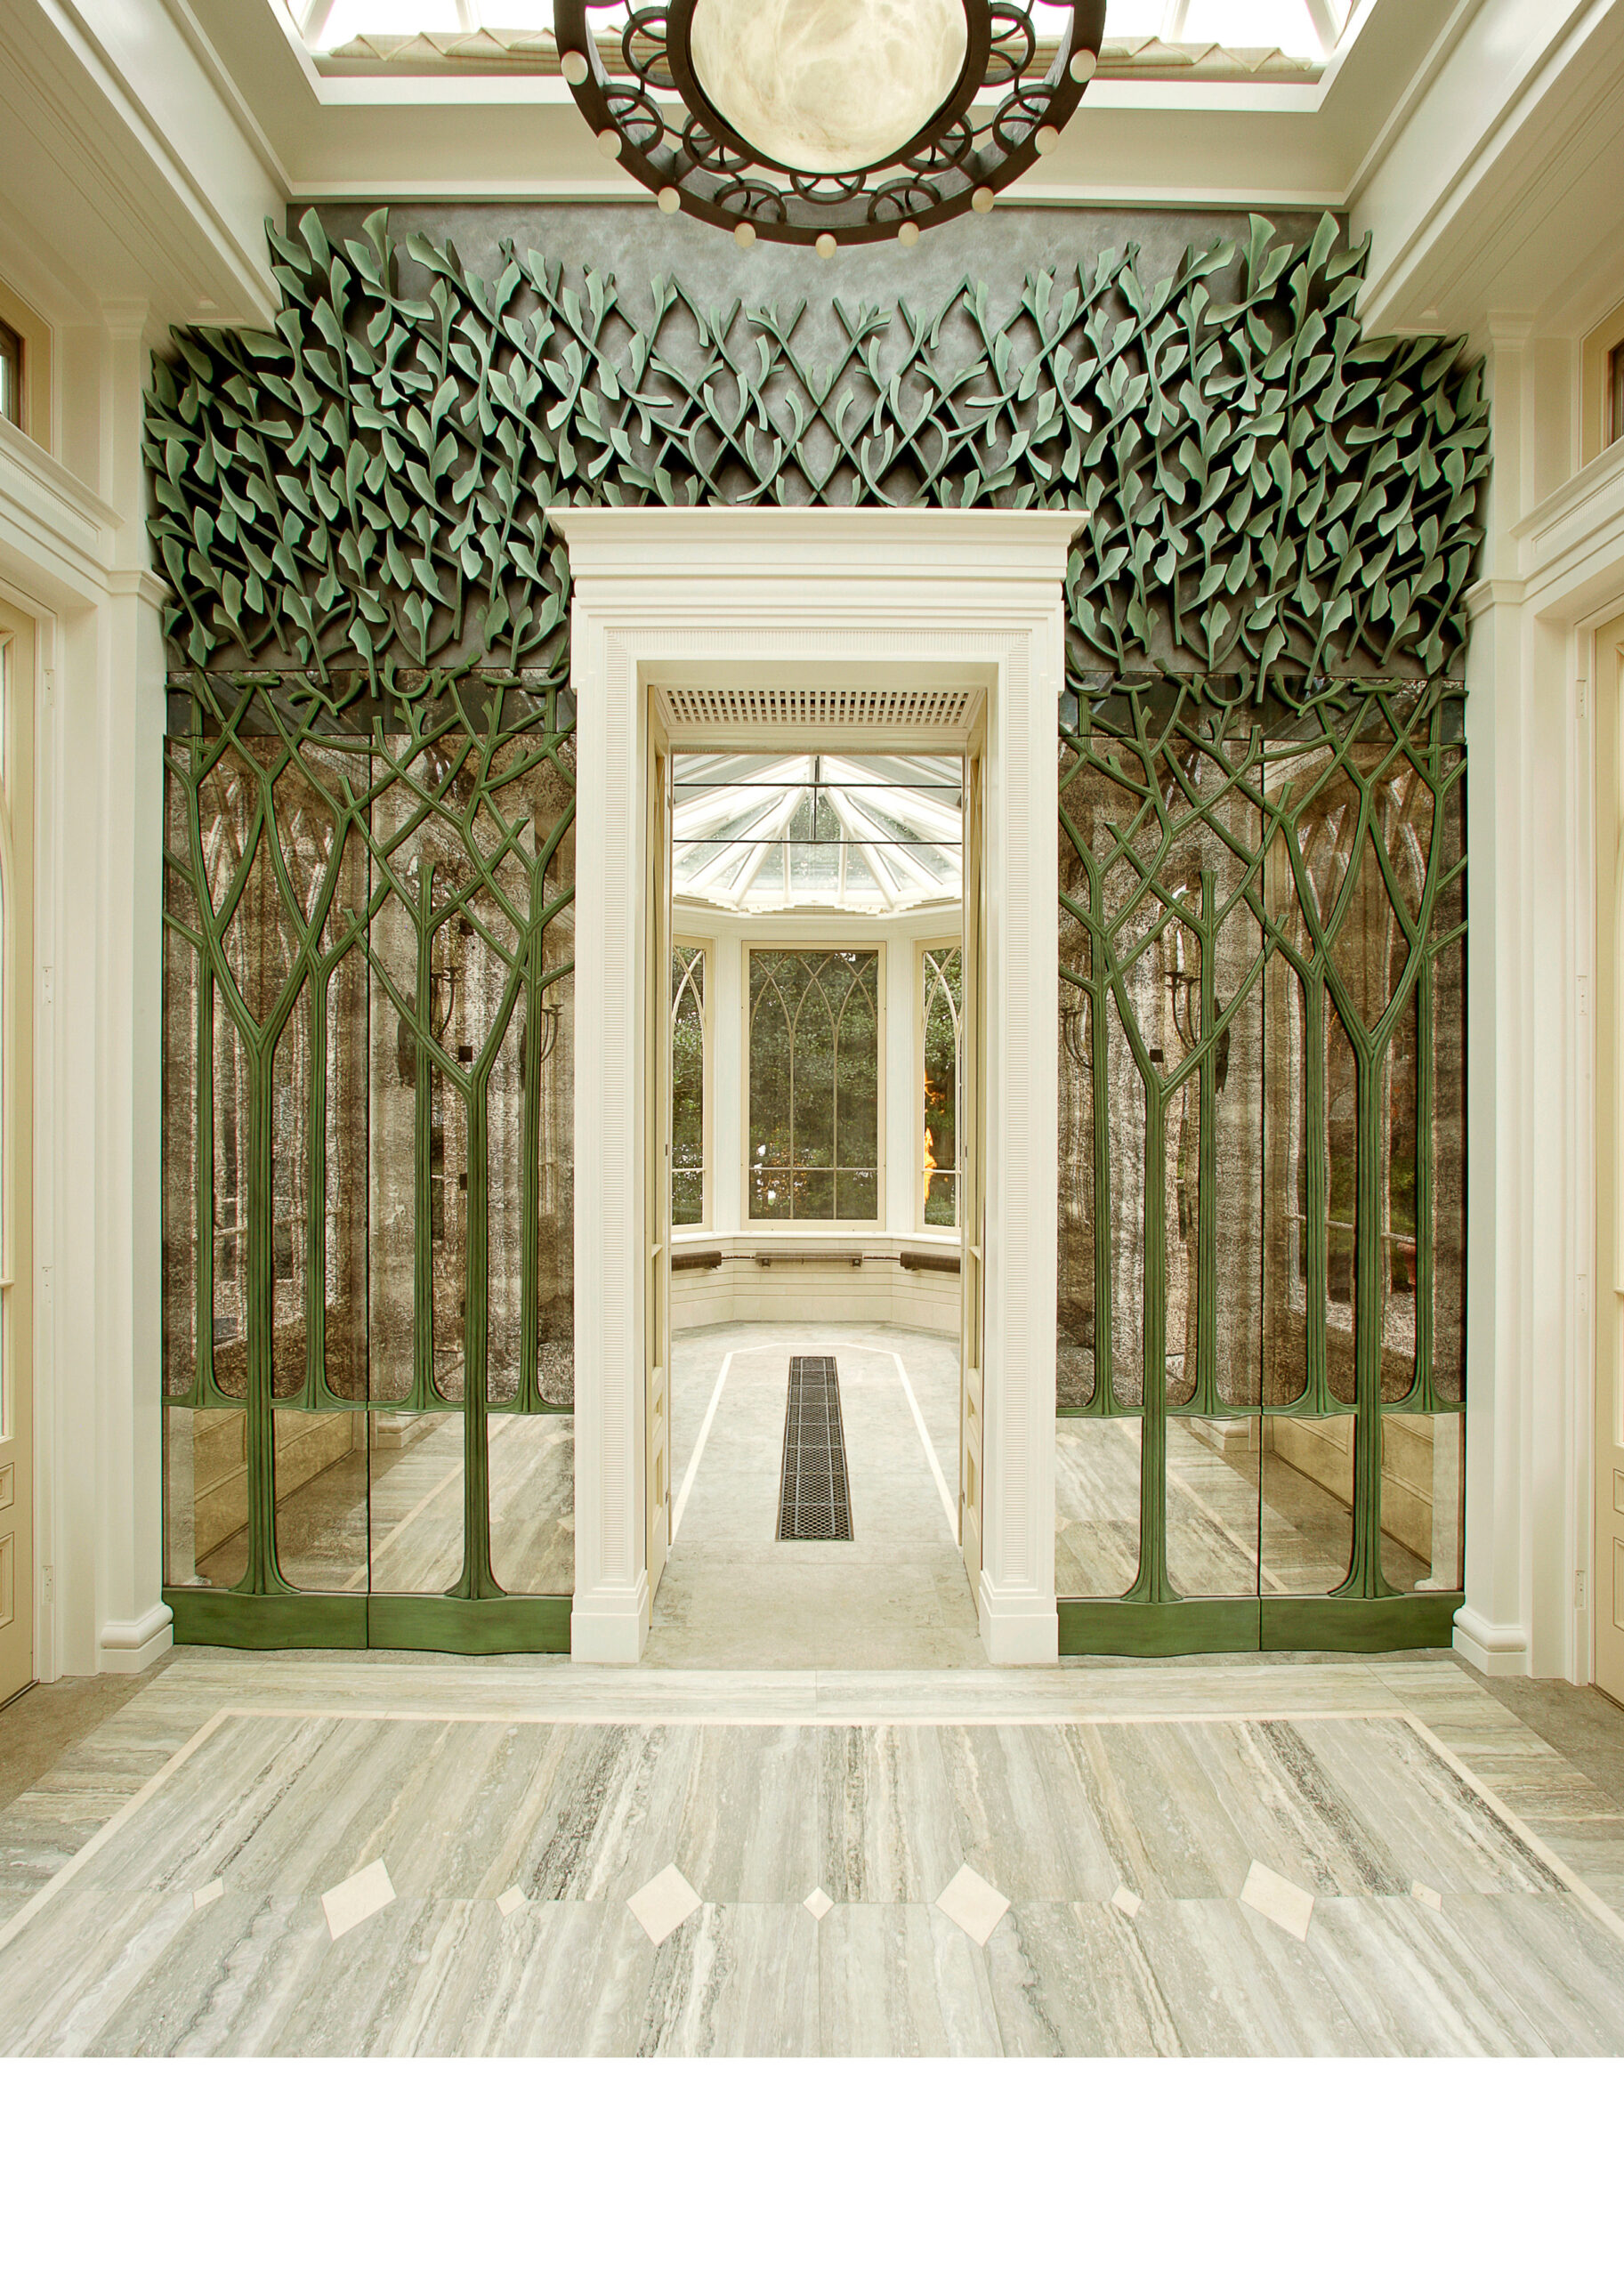 Schwarzman Estate – Garden Pavilion Walls and Bronze Doors